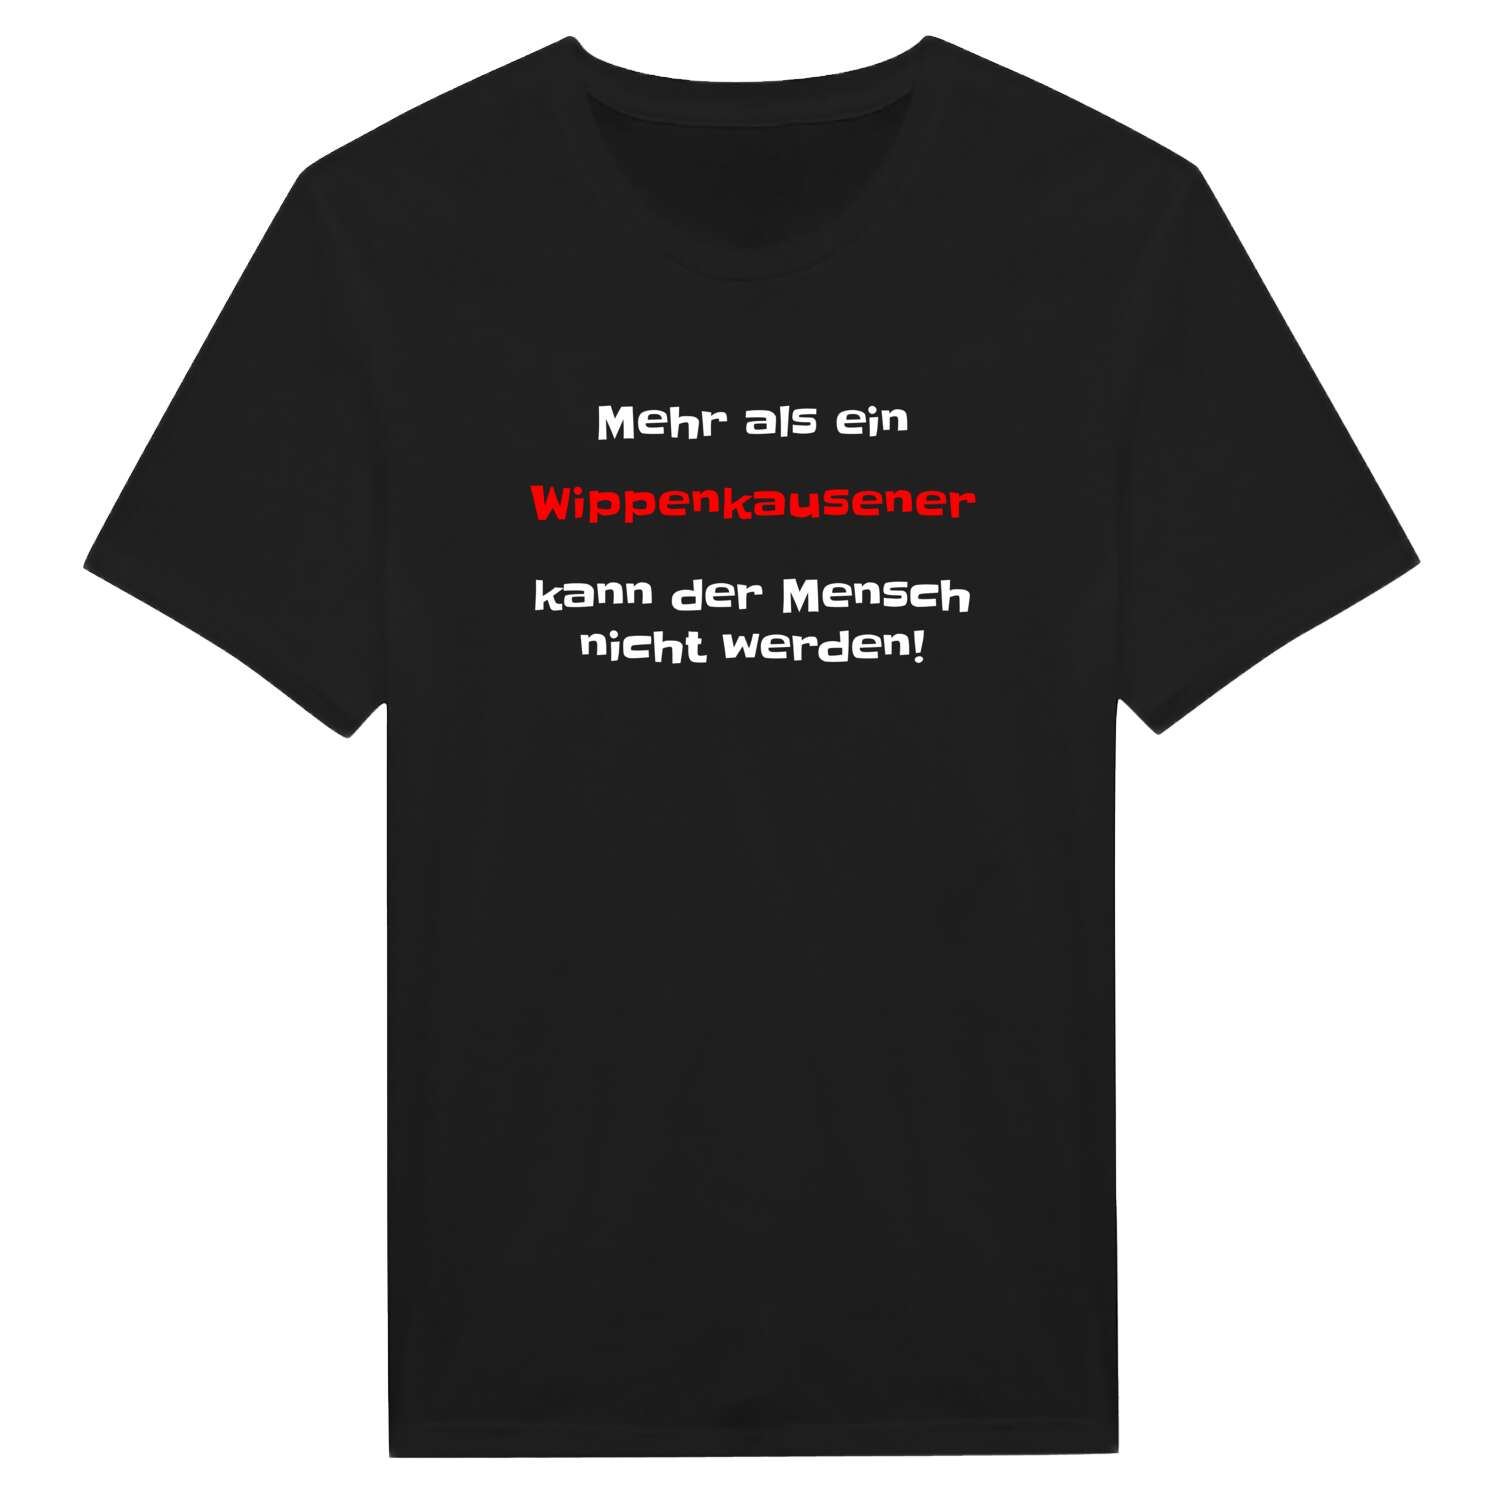 Wippenkausen T-Shirt »Mehr als ein«